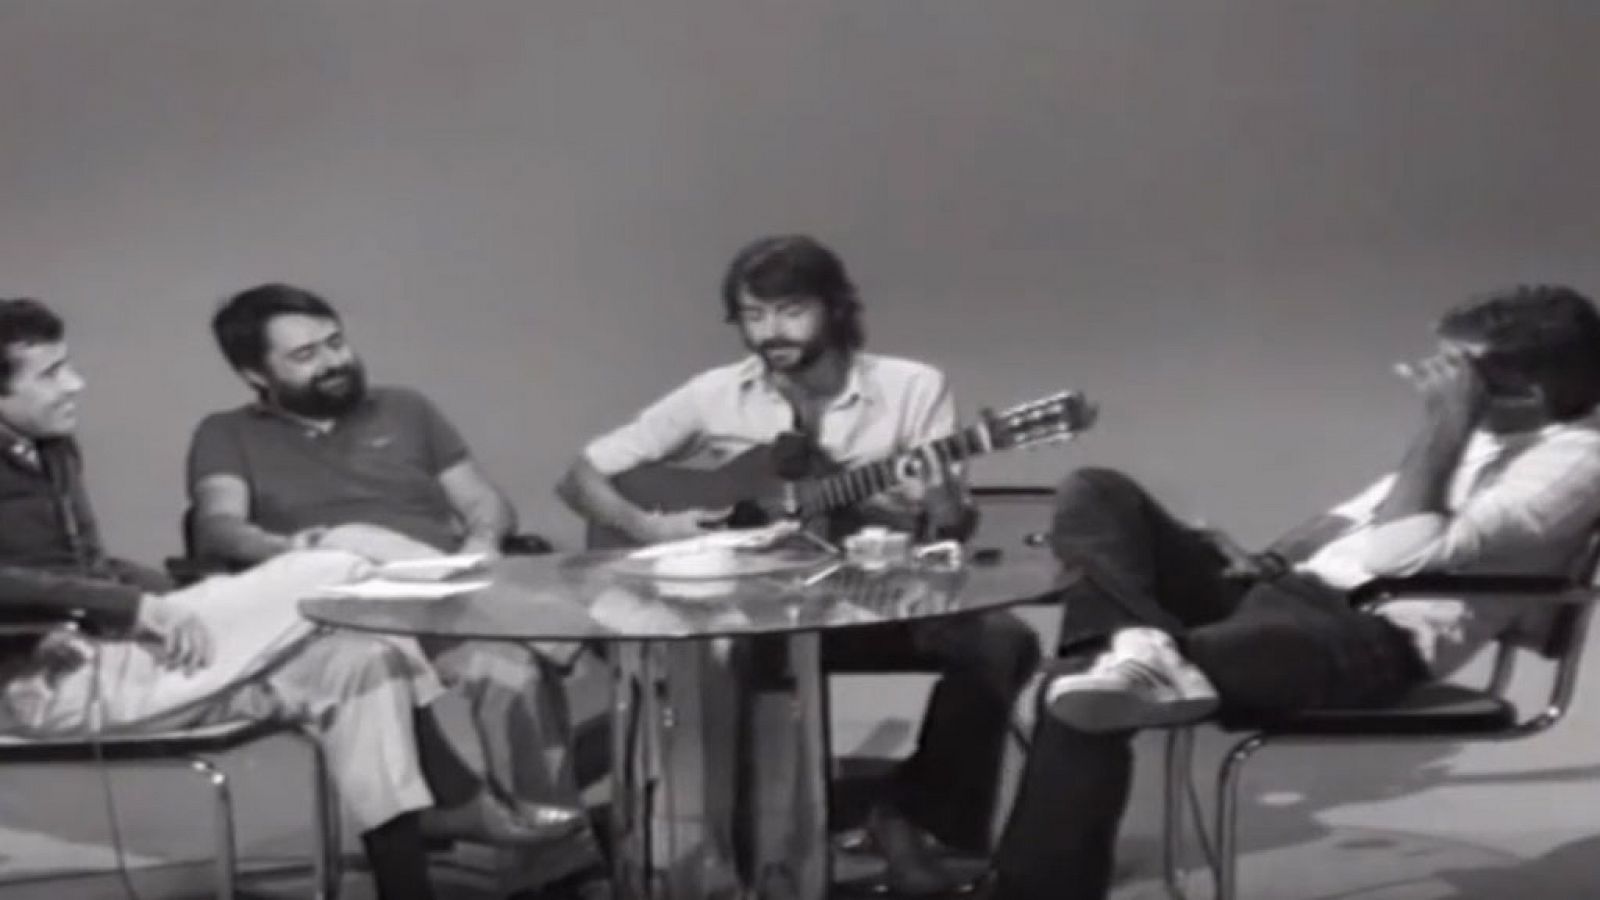 Aute le canta a Forges un pasodoble en 'Encuentros con las artes y las letras' (1976)